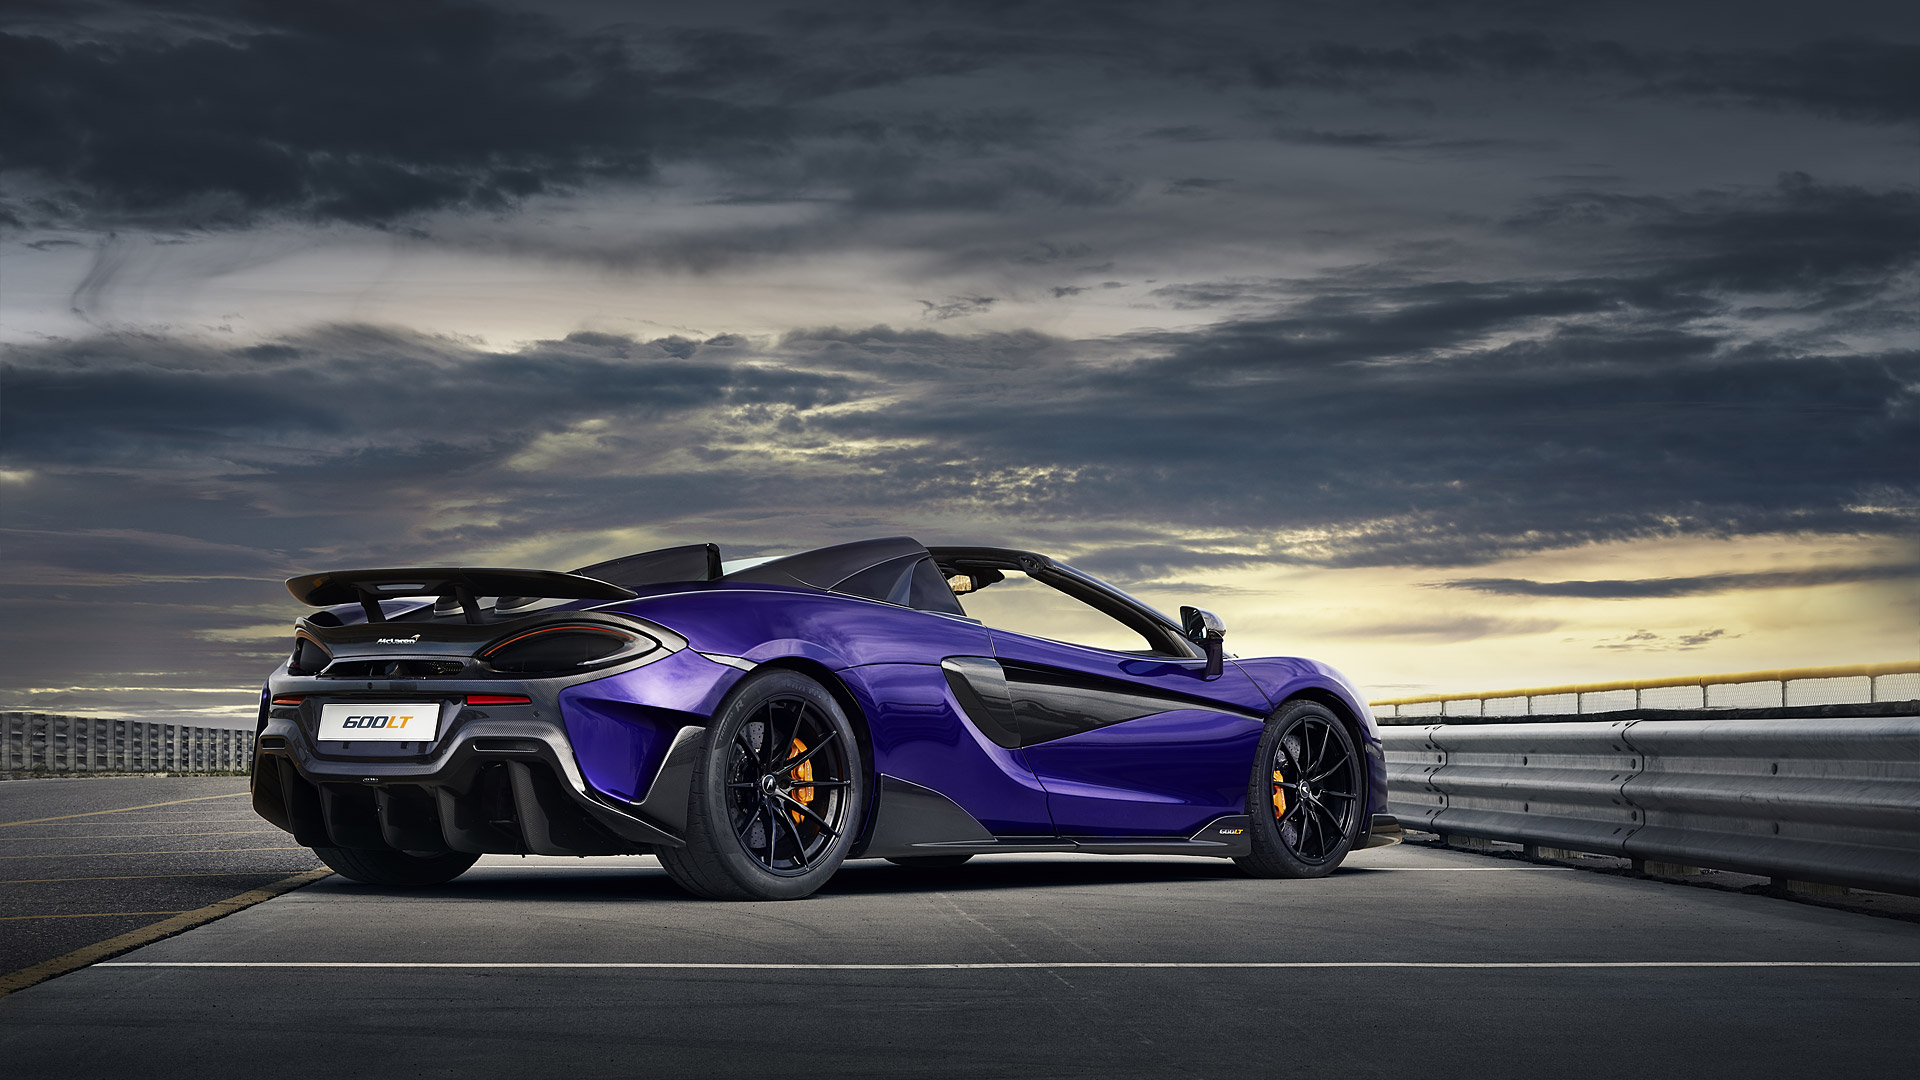  2020 McLaren 600LT Spider Wallpaper.